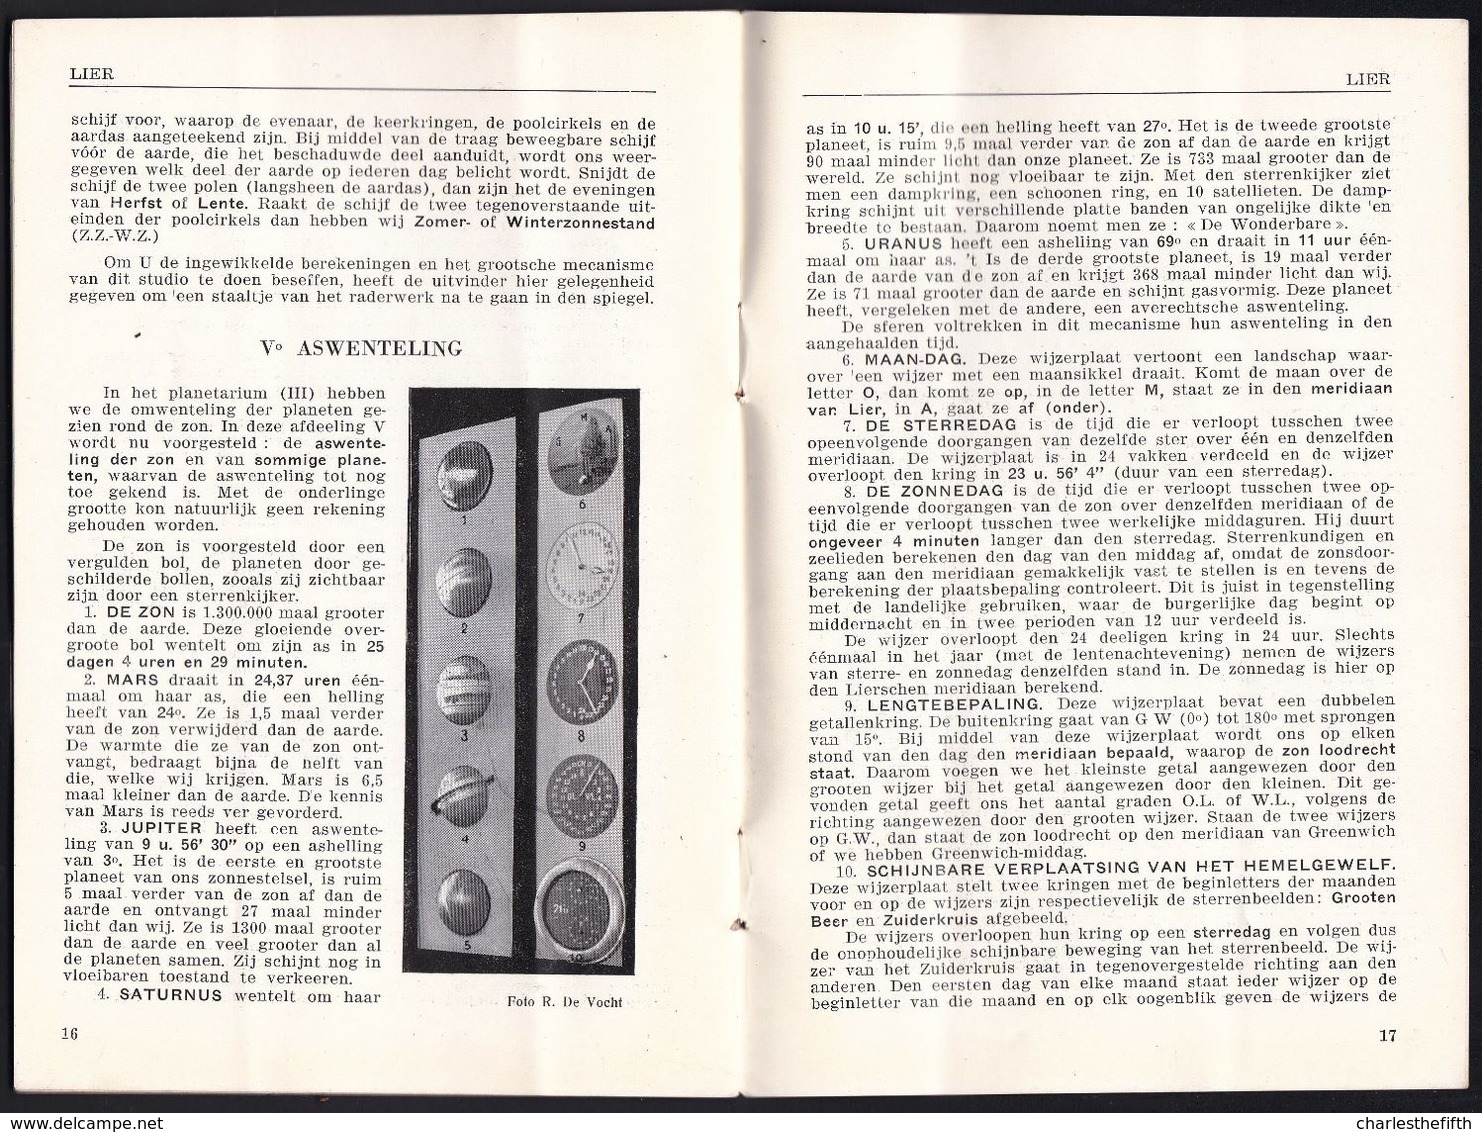 LIER - DE ZIMMERTOREN ASTRONOMISCHE KLOK EN STUDIO ORIGINELE BROCHURE 1931 - ZIE SCANS  ! - Toeristische Brochures